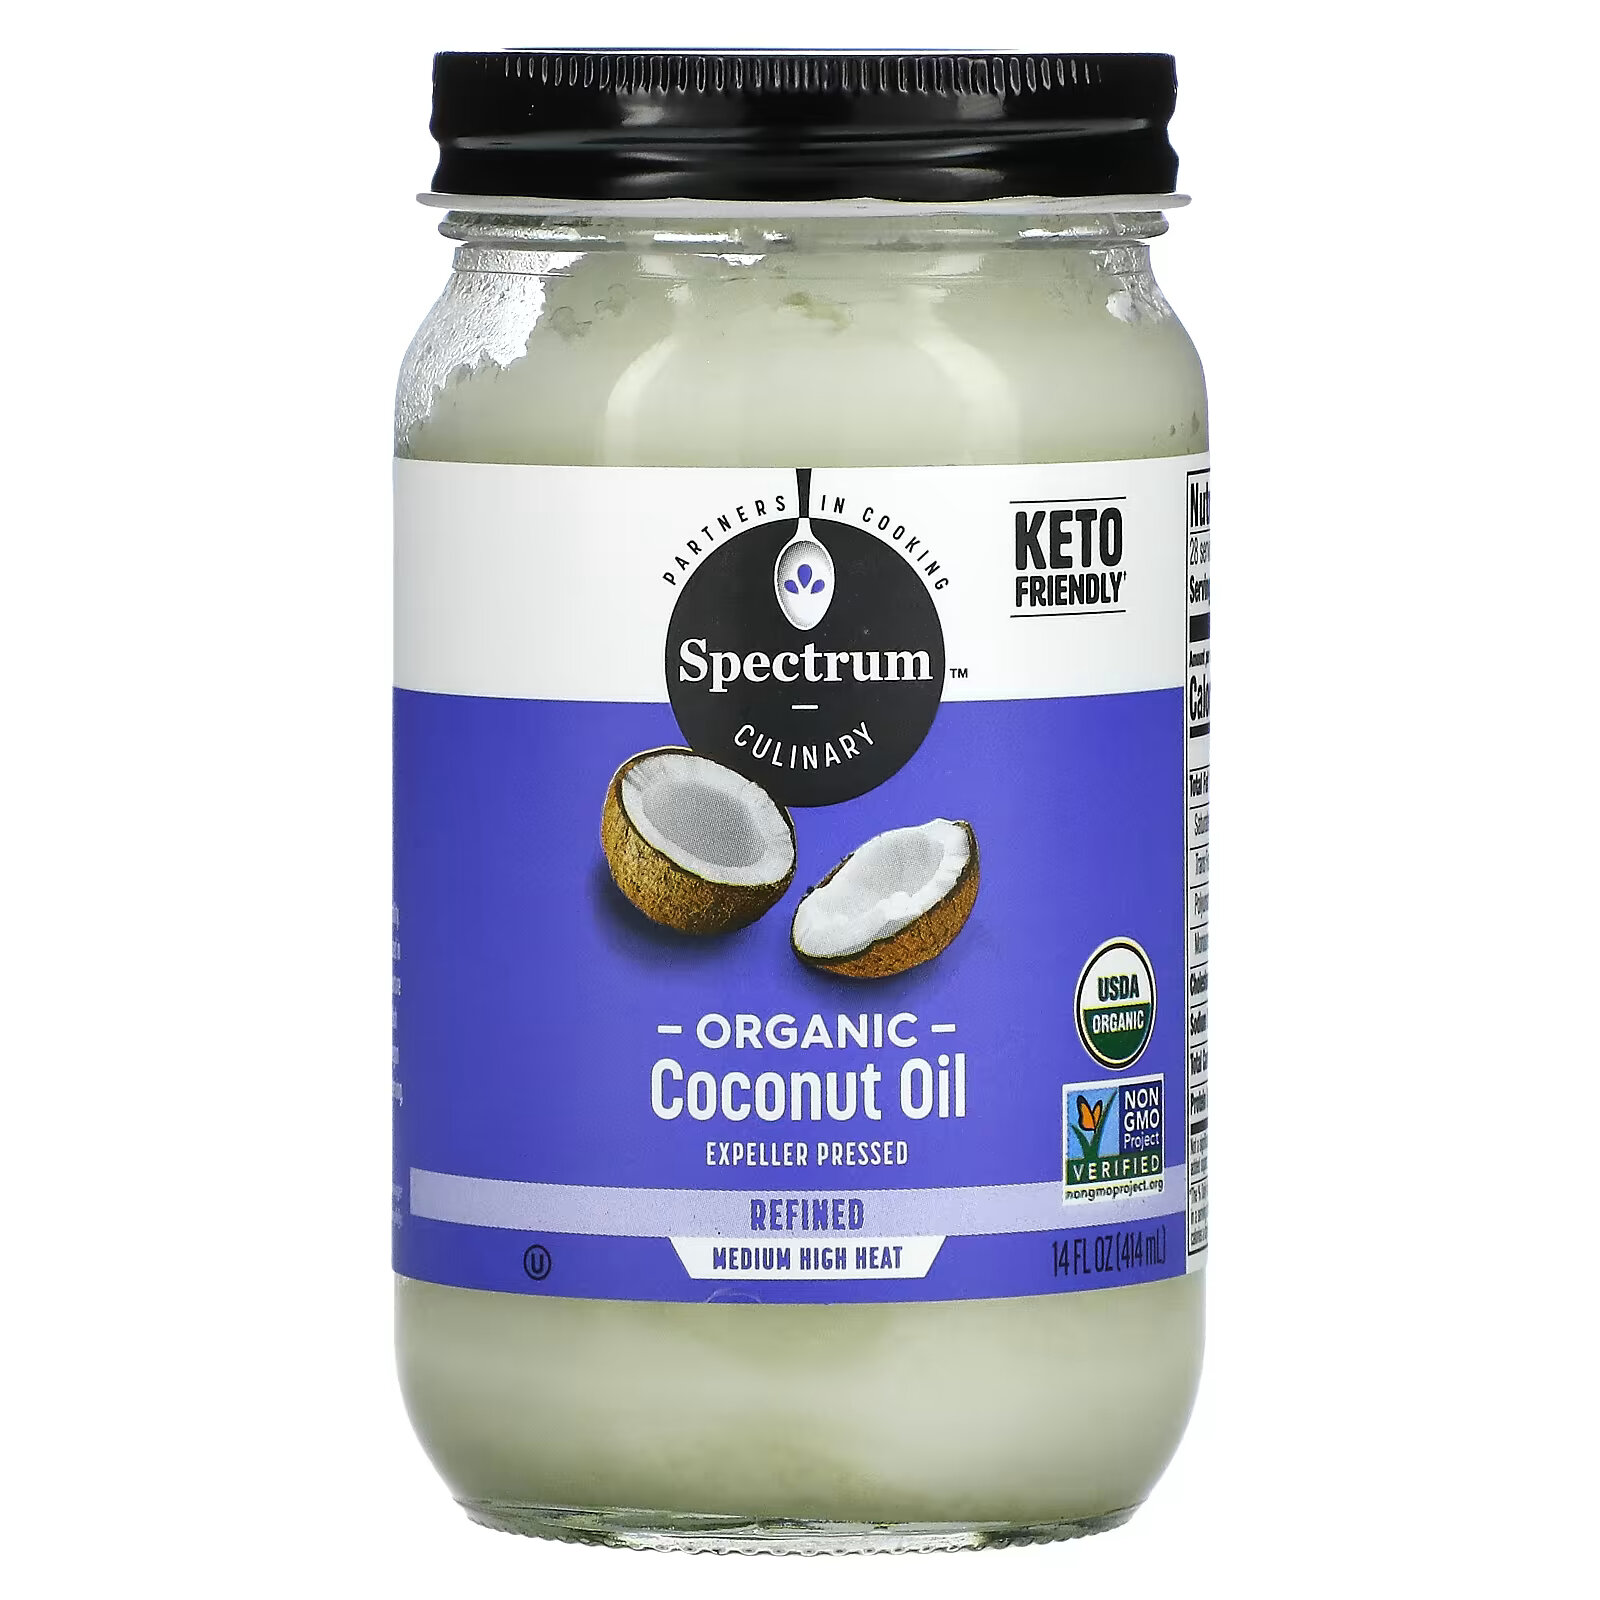 Кокосовое масло Spectrum Culinary рафинированное, 414 мл la tourangelle органическое рафинированное кокосовое масло 414 мл 14 жидк унций